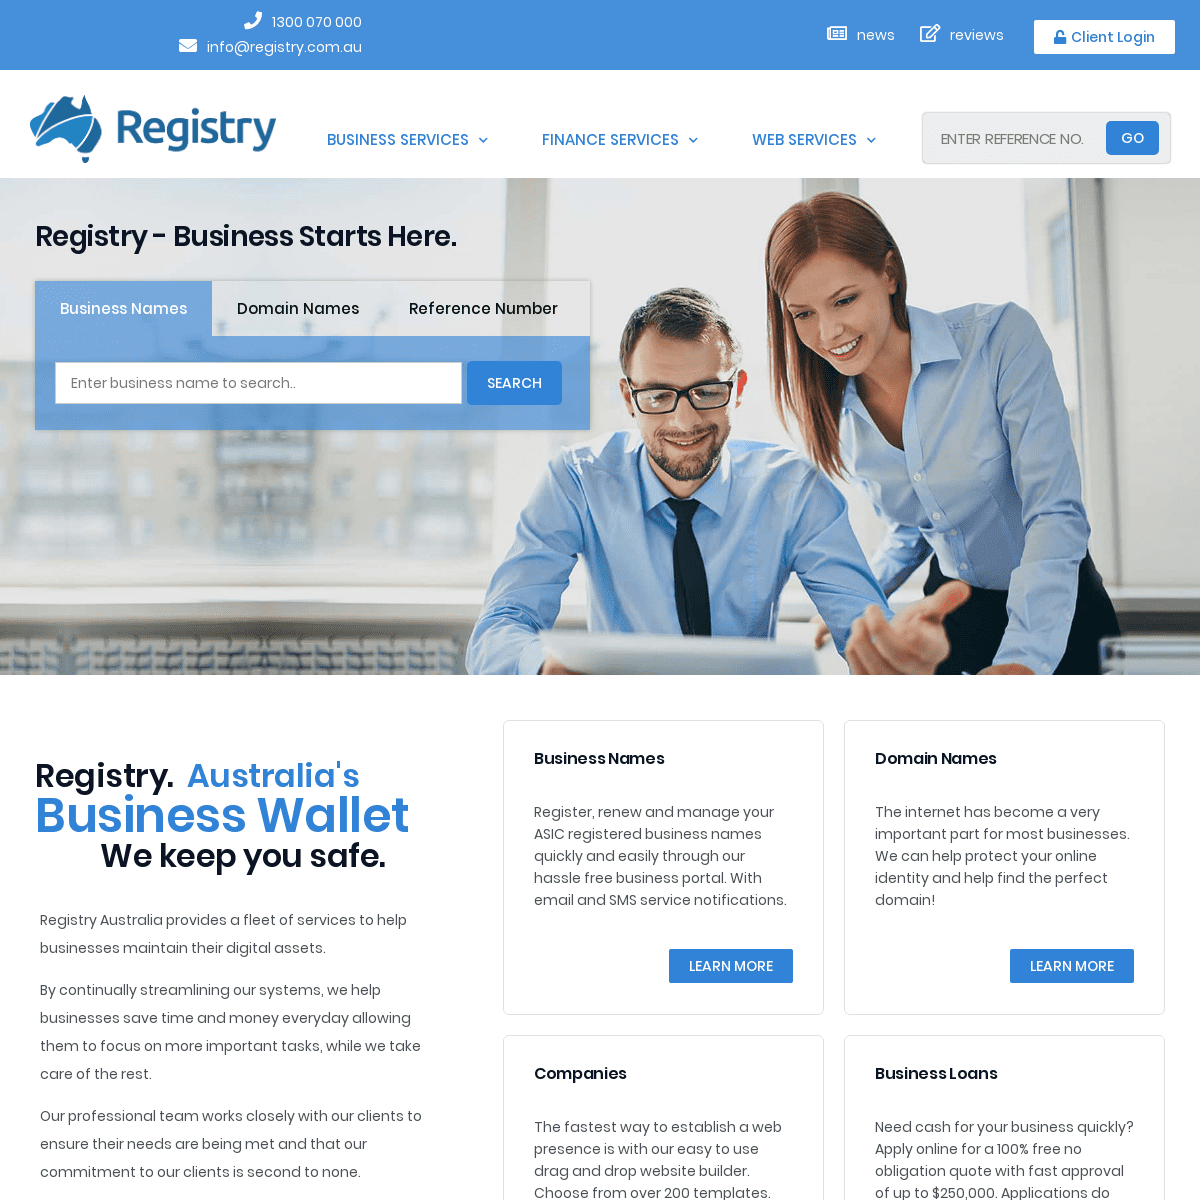 A complete backup of registry.com.au